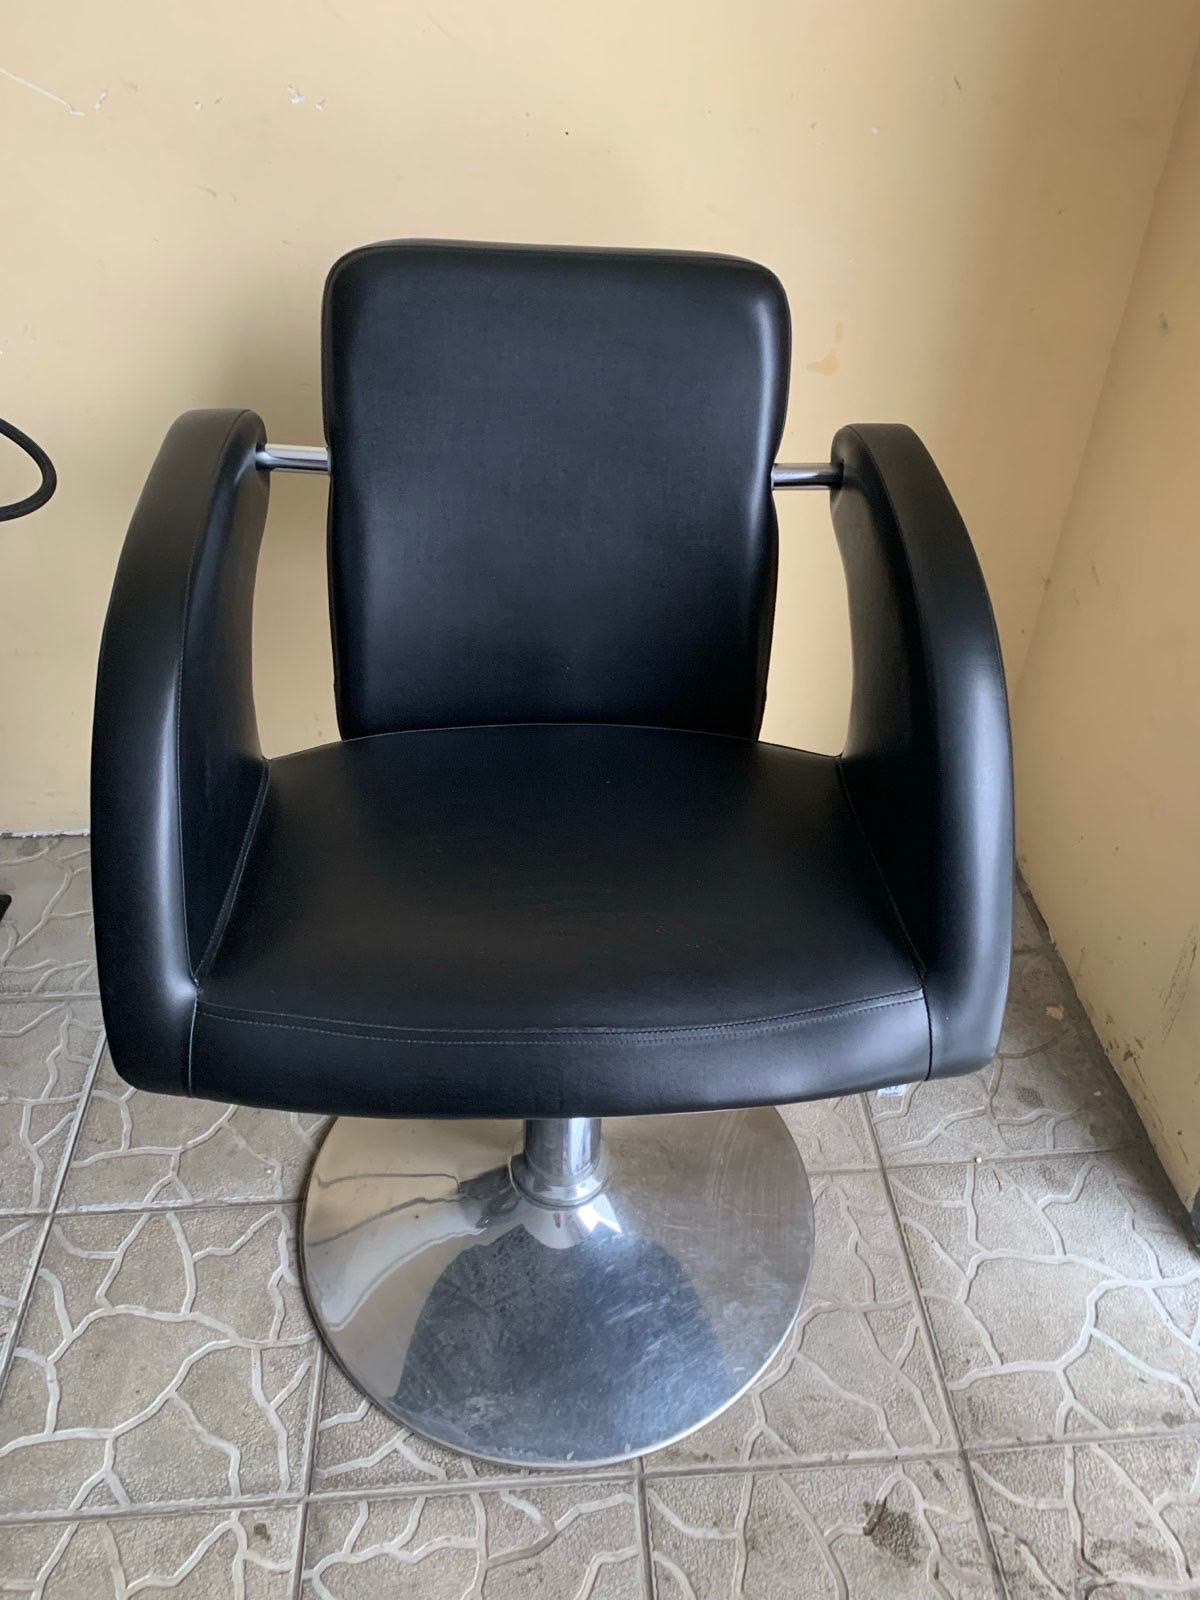 Продам мийку перукарську з кріслом для клієнта 16 000 грн